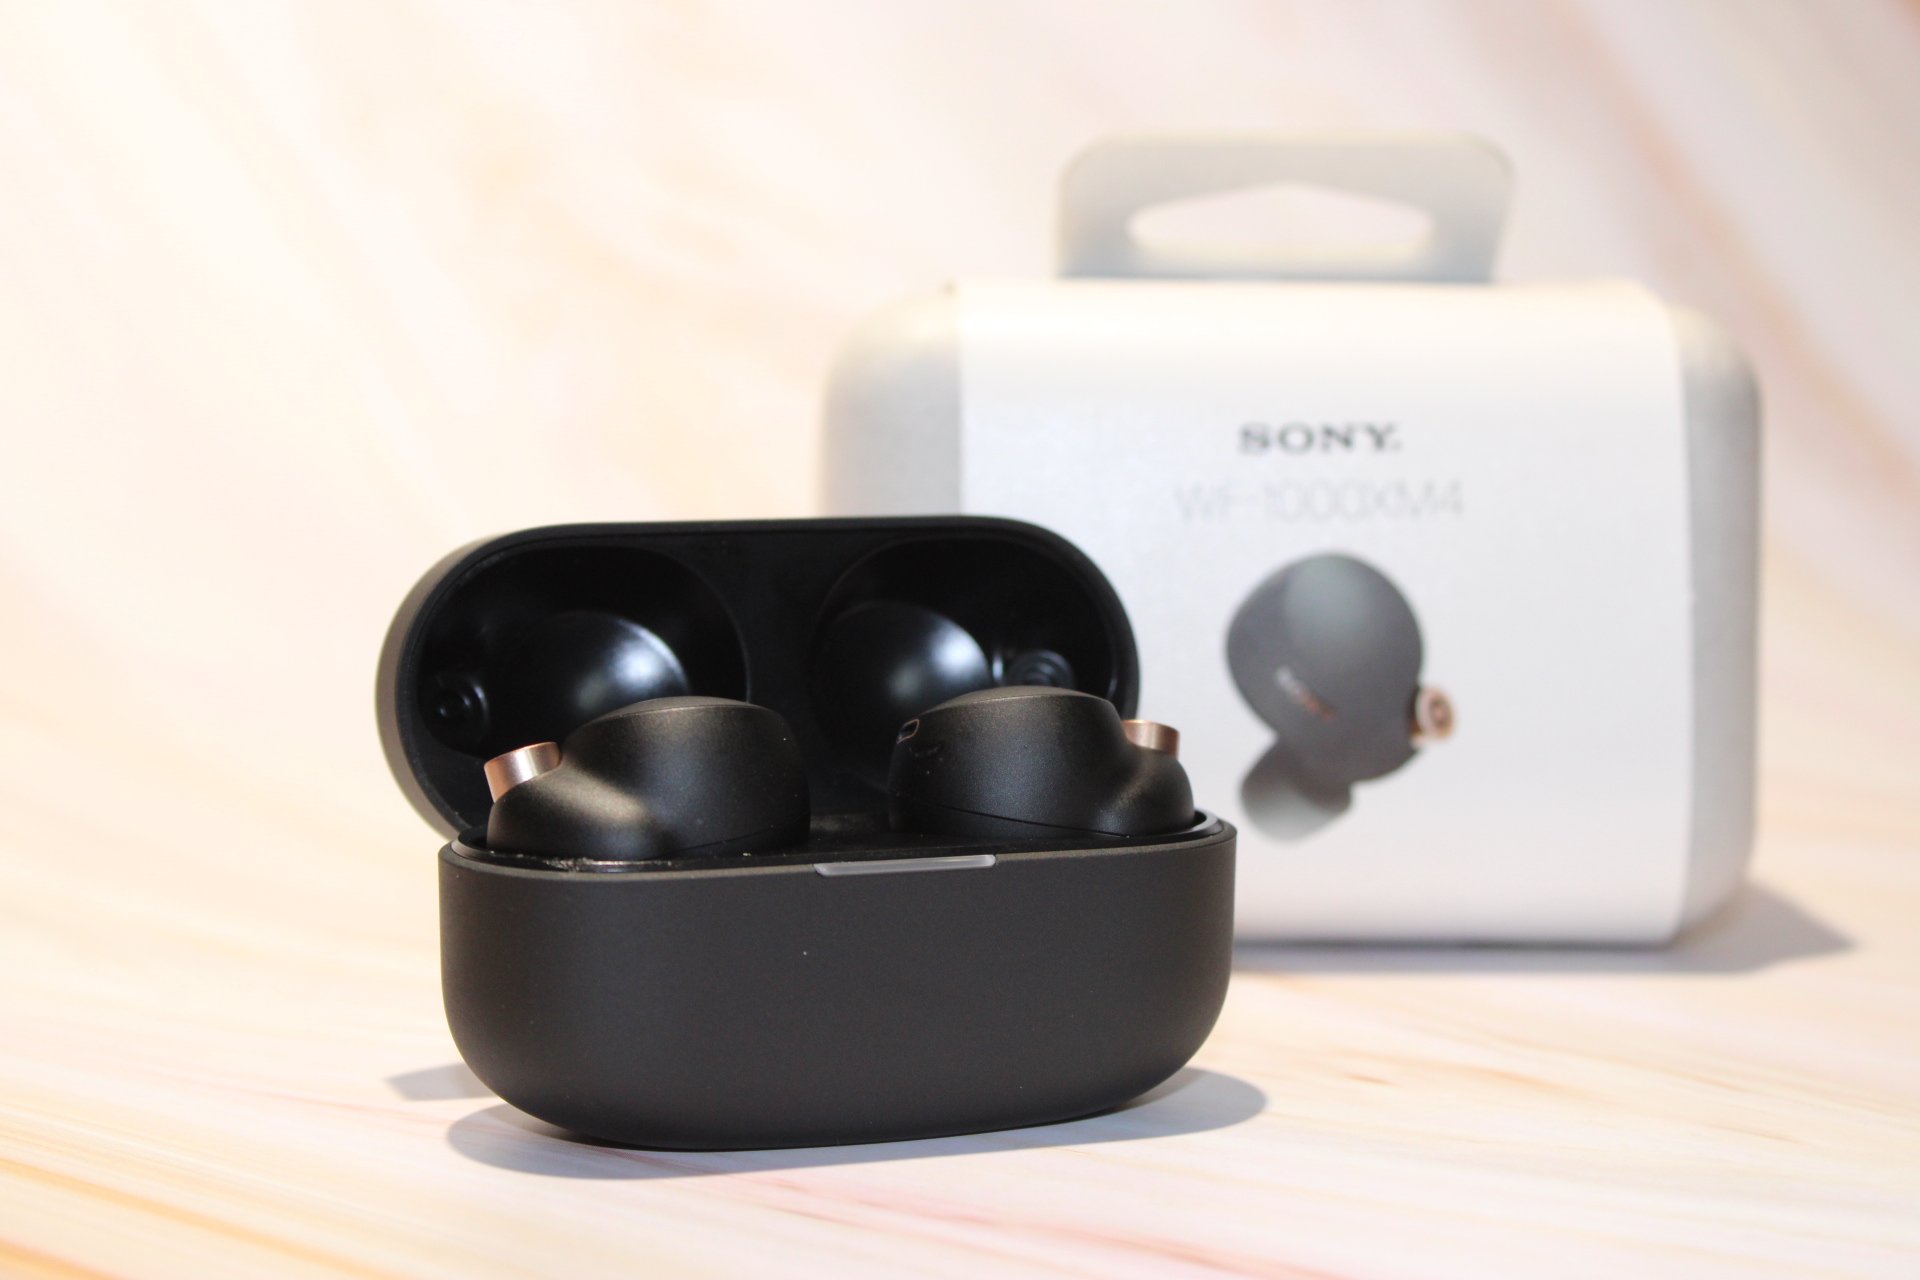 Sony Wf1000xm4 earbuds in case